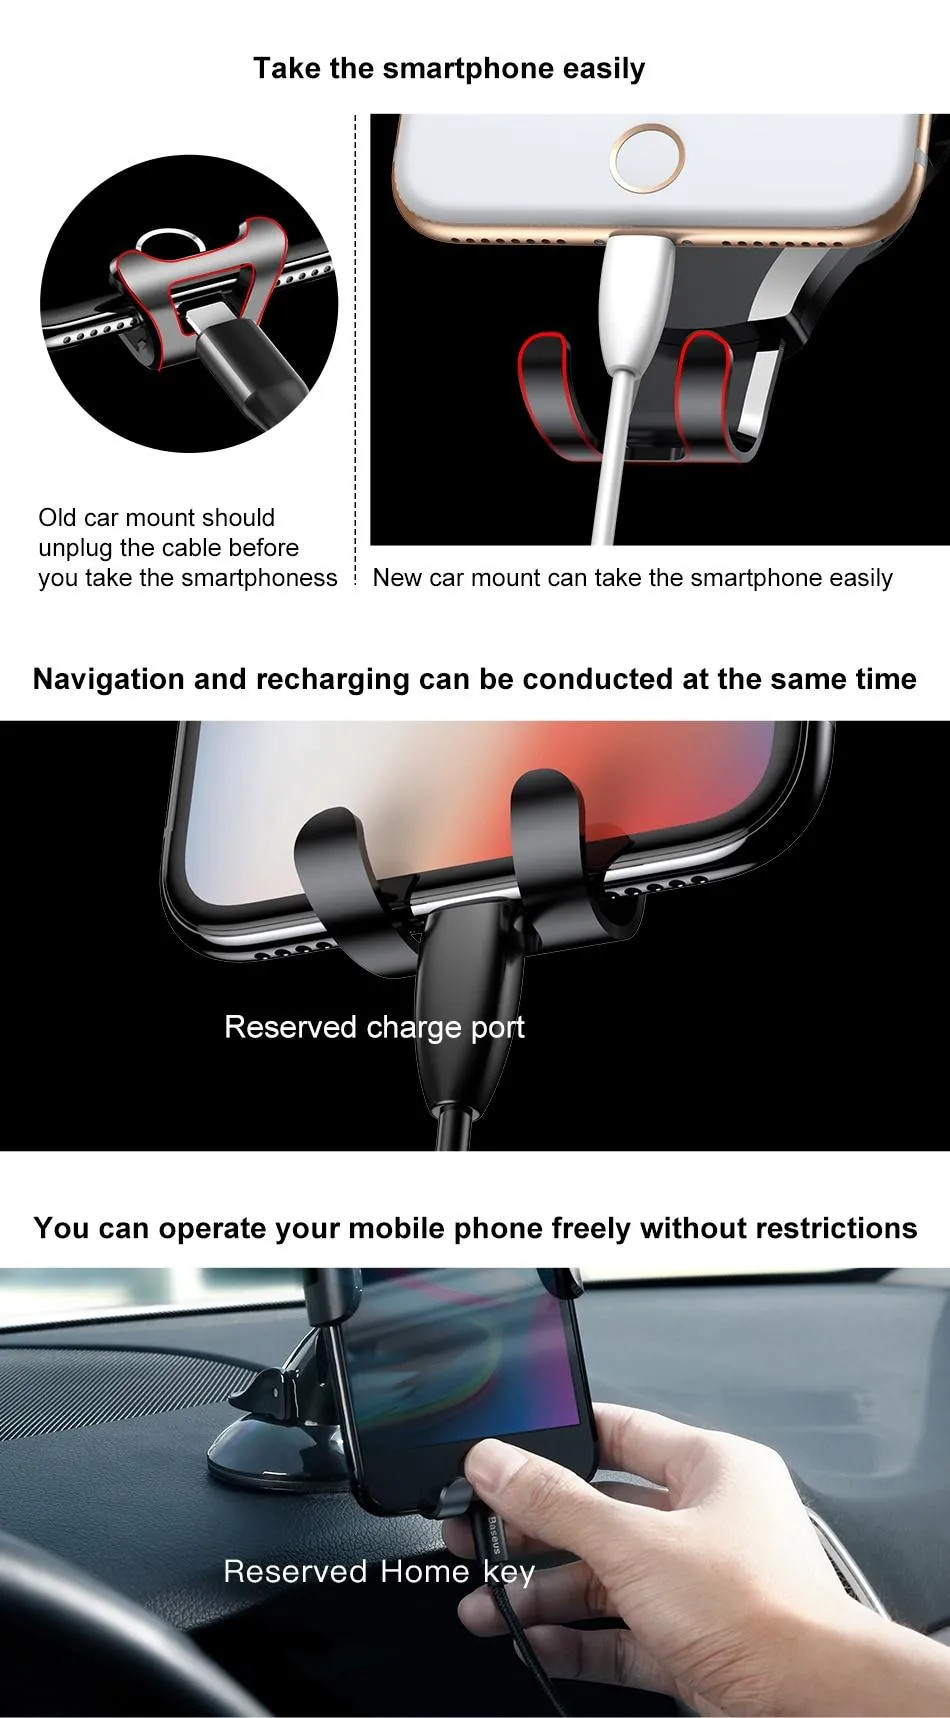 Giá đỡ điện thoại đóng mở tự động hiệu Baseus O-scm Type Gravity trên xe hơi ô tô